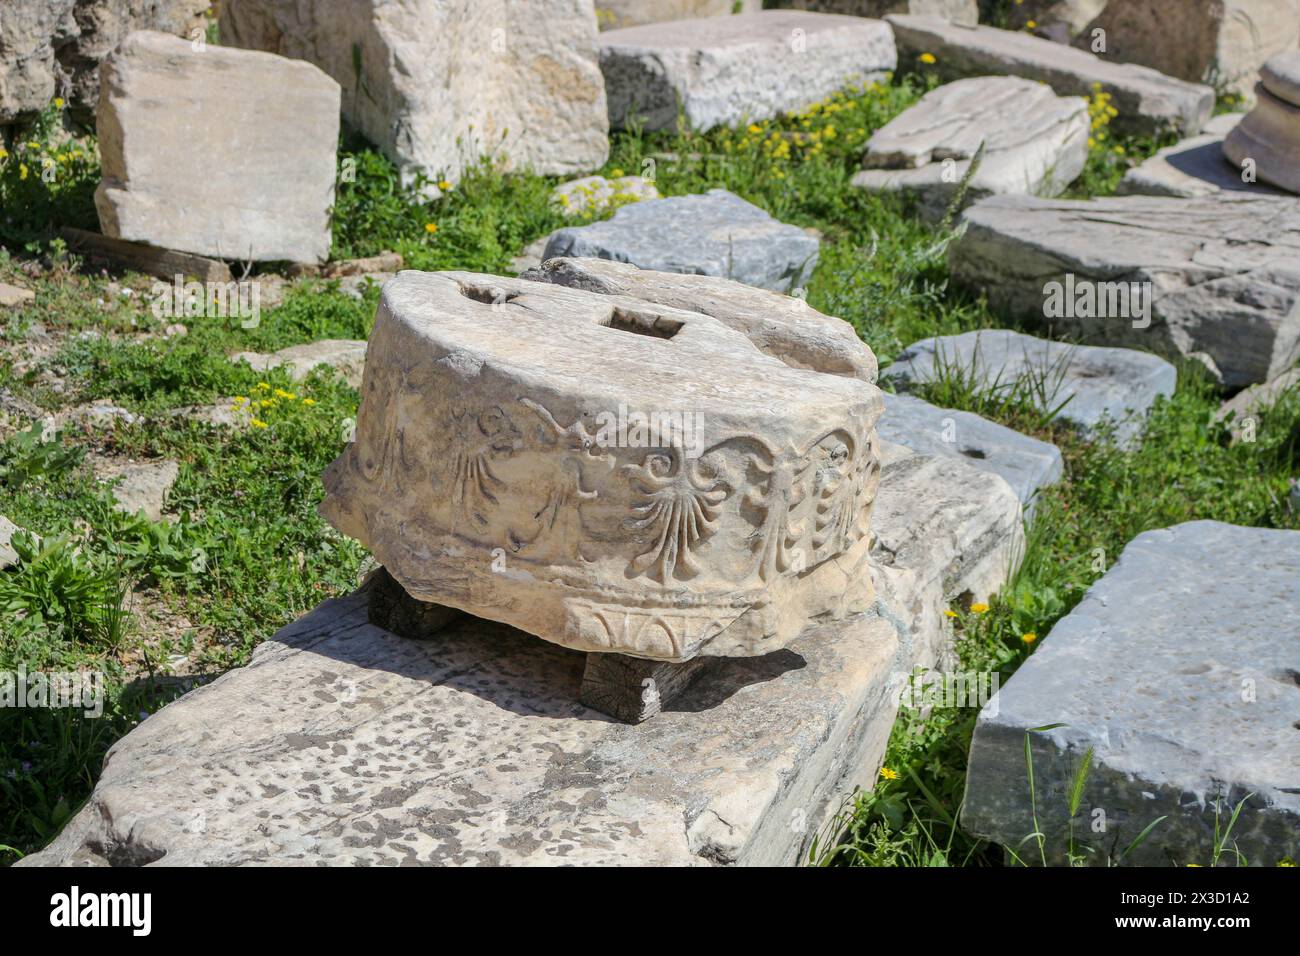 Osserva la bellezza duratura di una pietra invecchiata, parte delle maestose colonne di marmo che adornano l'Acropoli, raccontando silenziosamente storie di antichi artigiani Foto Stock